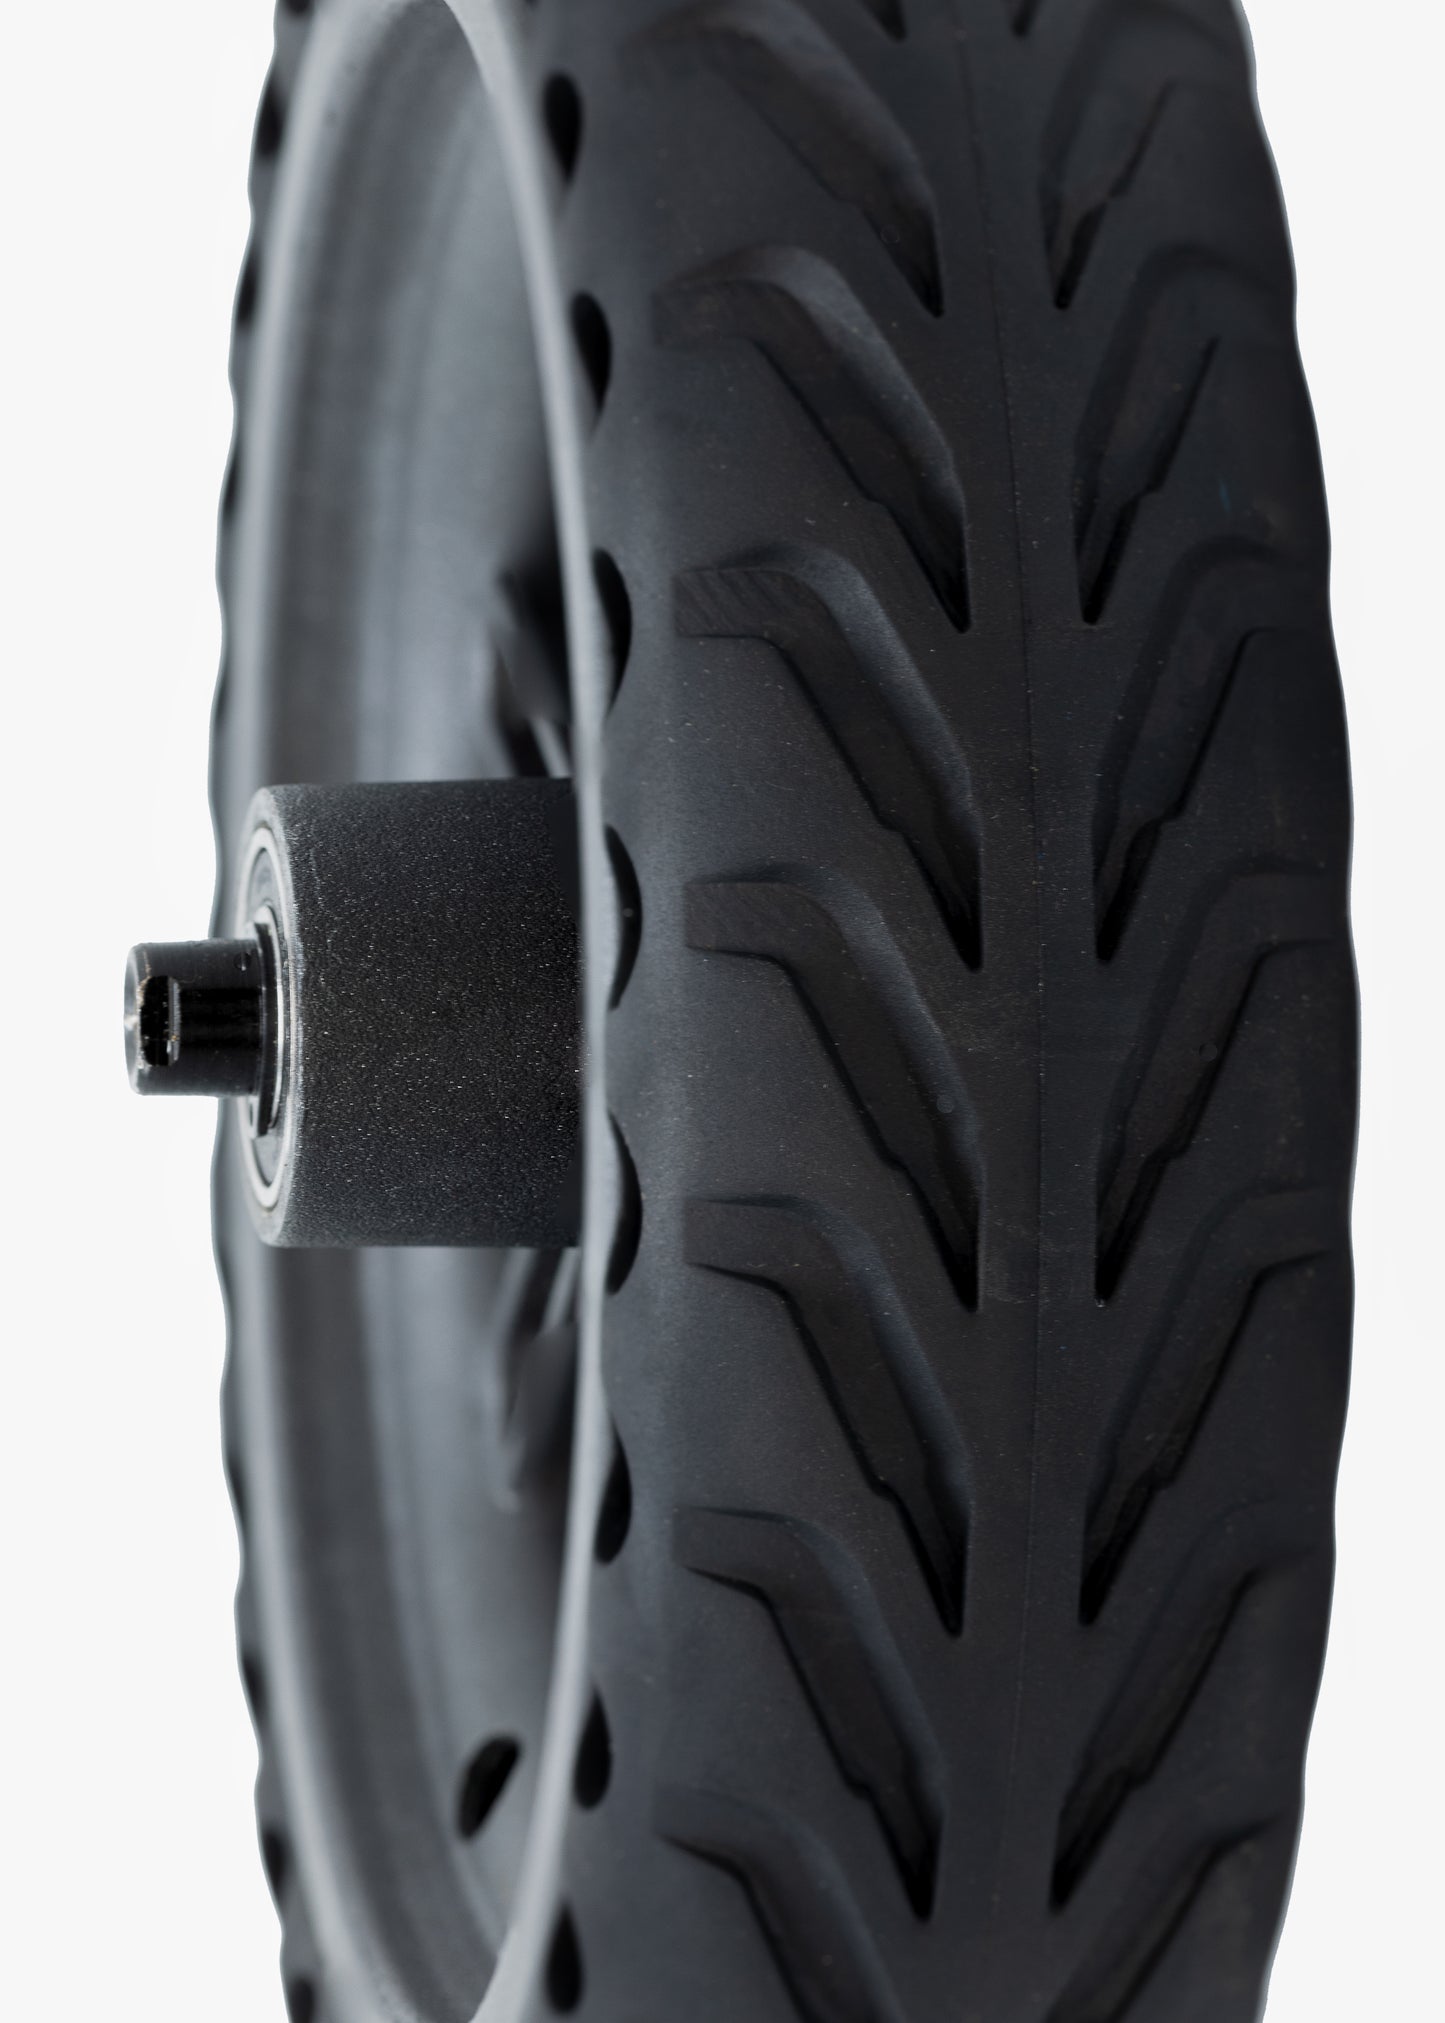 ES019- Solid Tire Rear Wheel